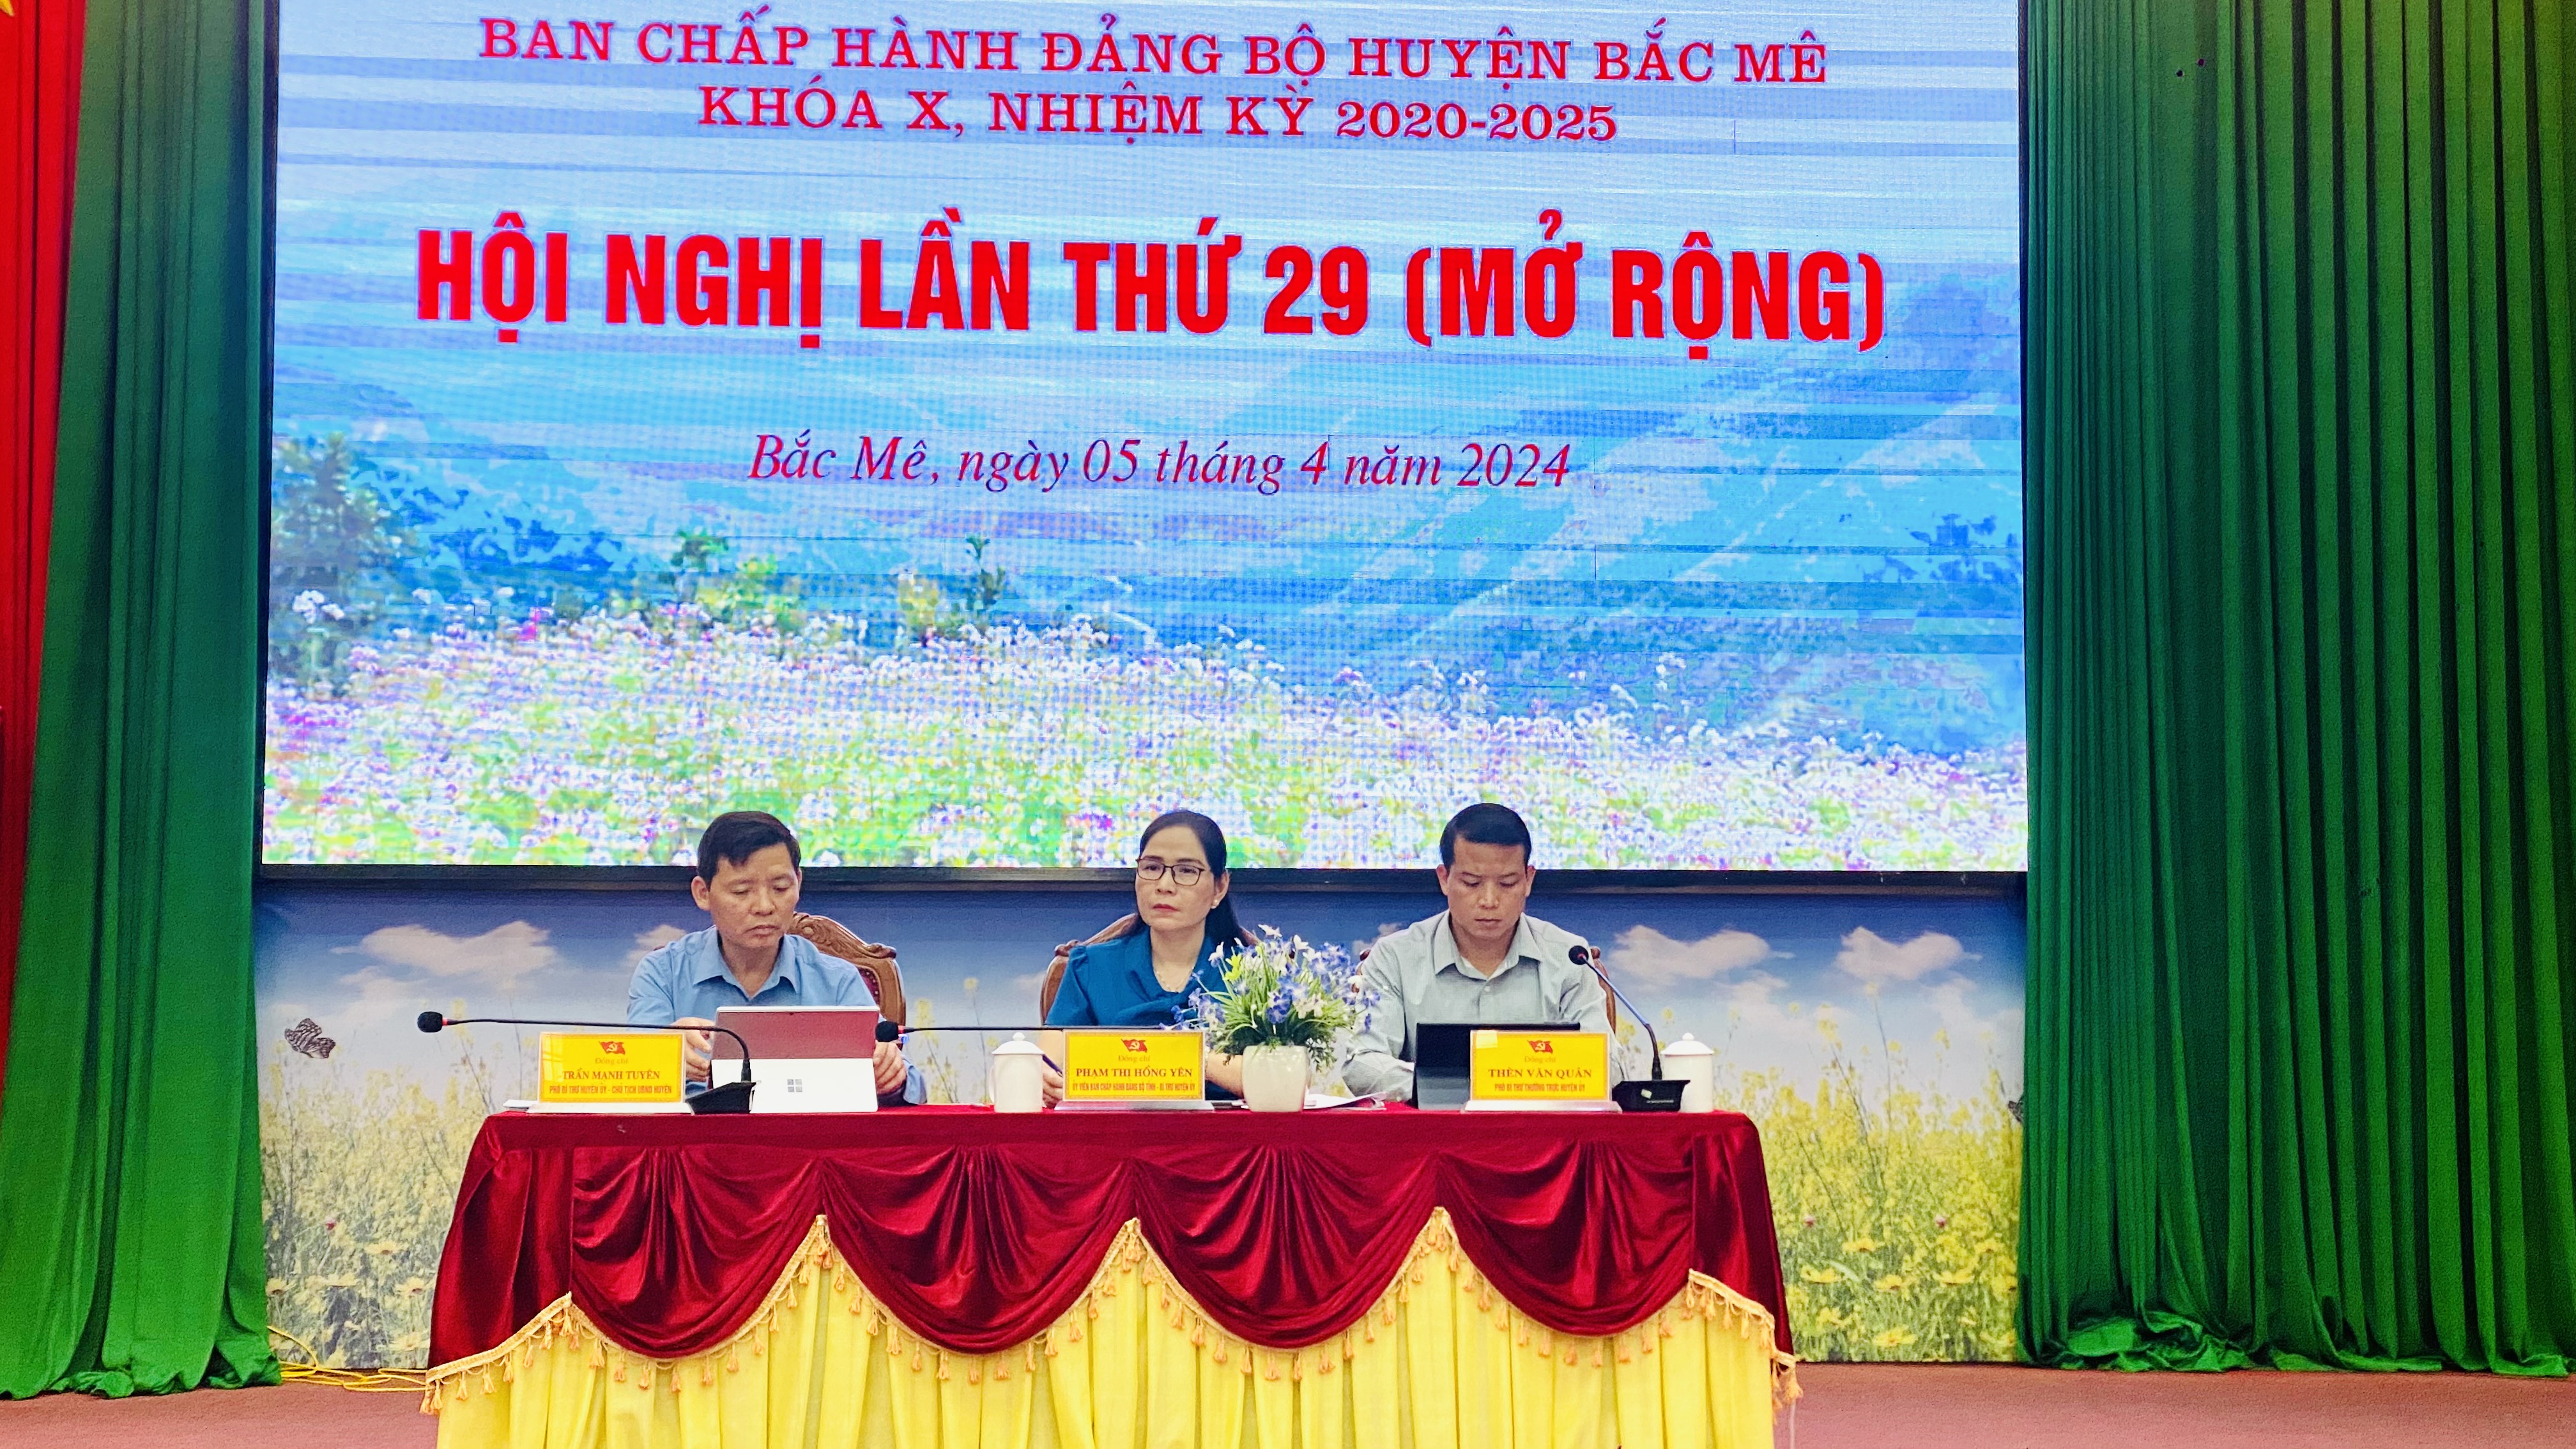 Hội nghị BCH Đảng bộ huyện Bắc Mê lần thứ 29, khóa X, nhiệm kỳ 2020-2025